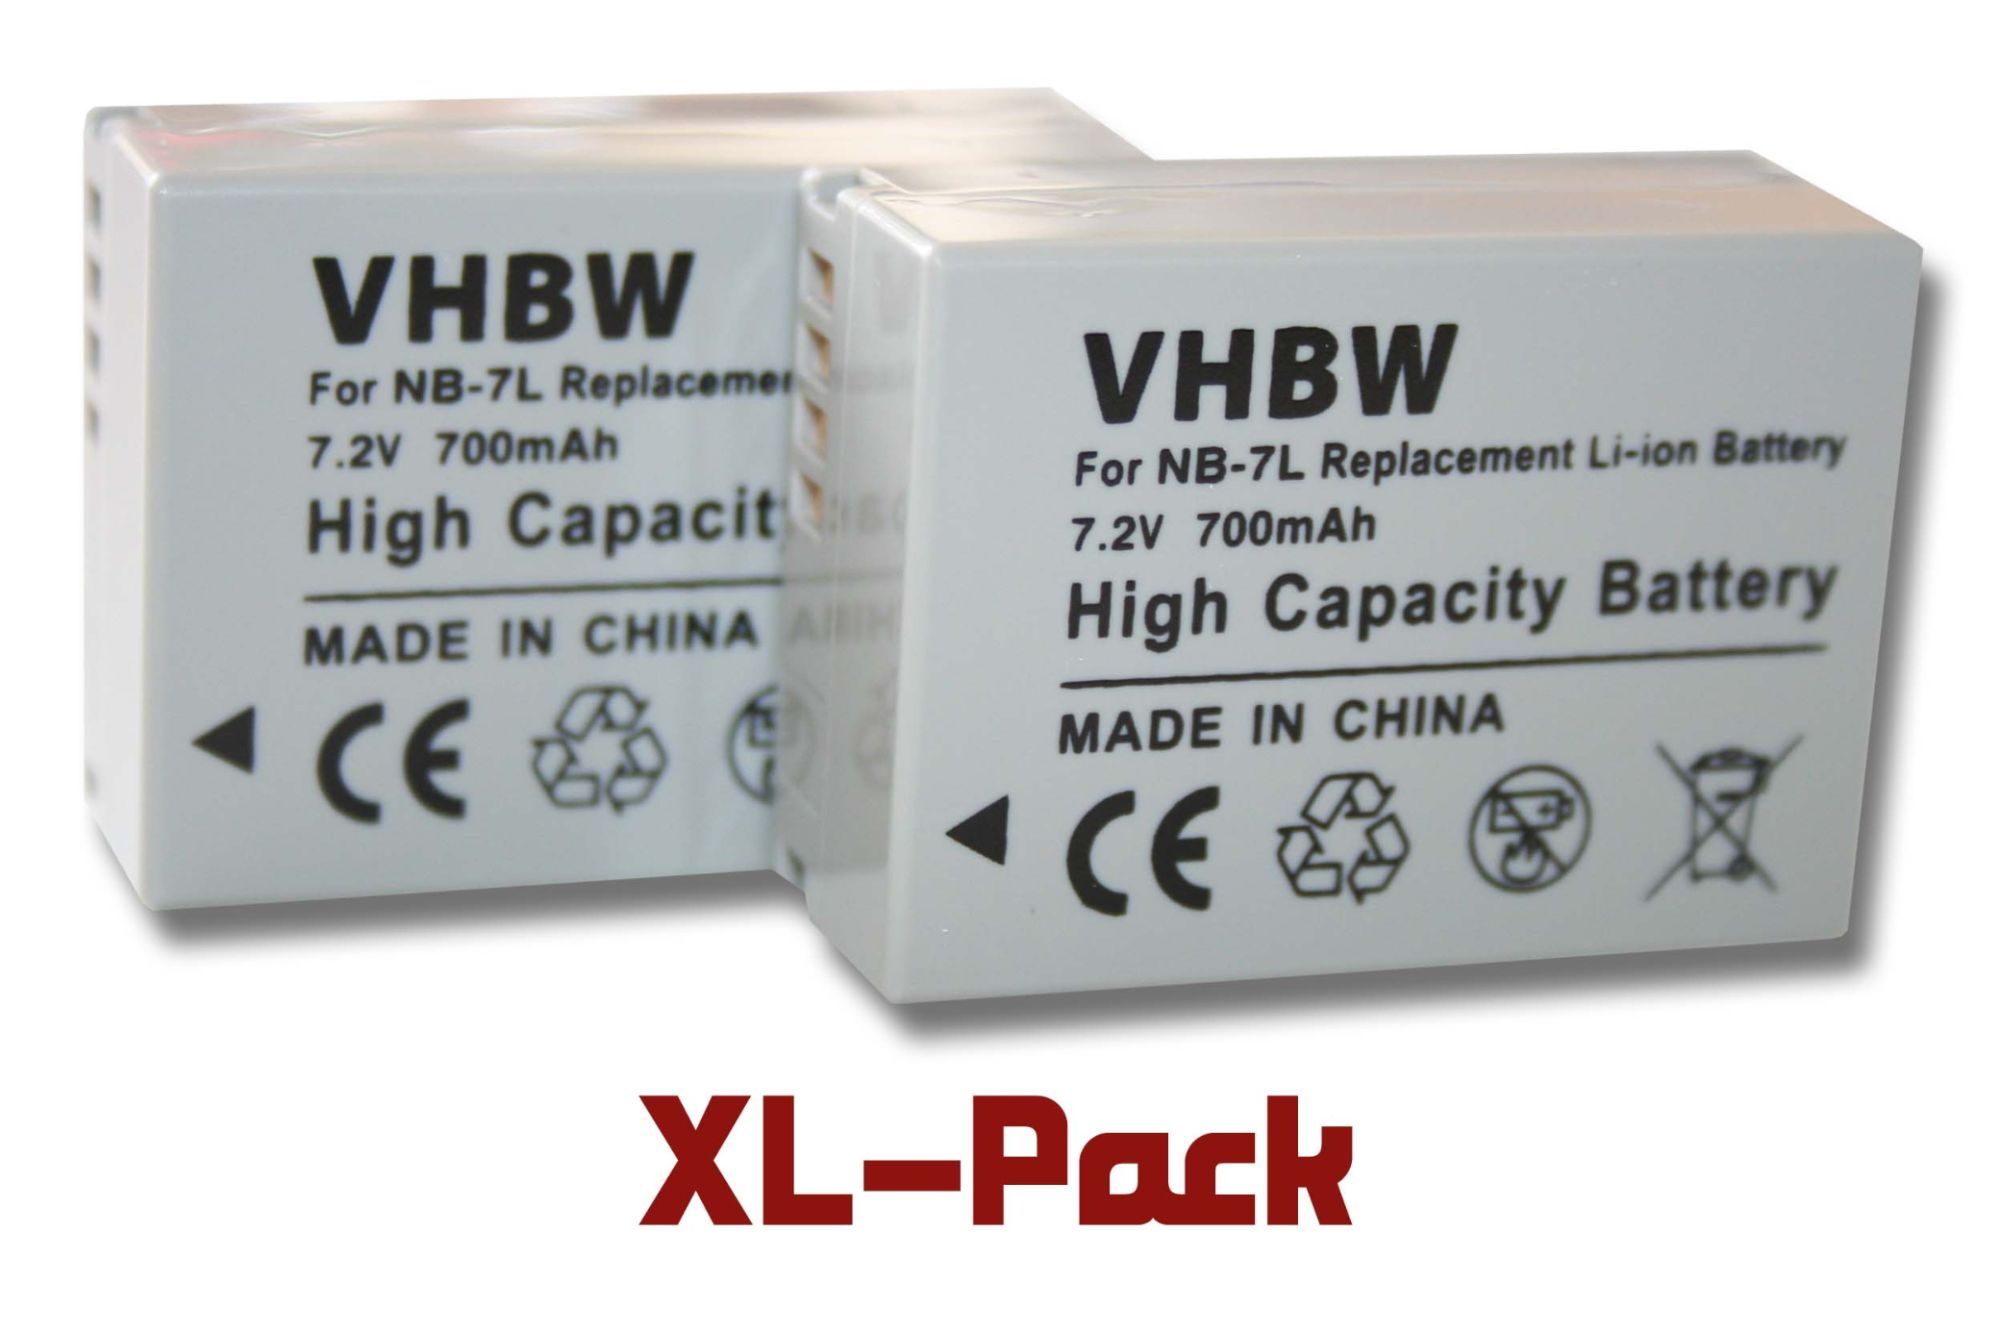 2 x batterie Li-Ion 700mAh (7.2V) pour appareil photo Canon Powershot G10, G11, G12, SX30 IS, etc. Remplace : NB-7L.